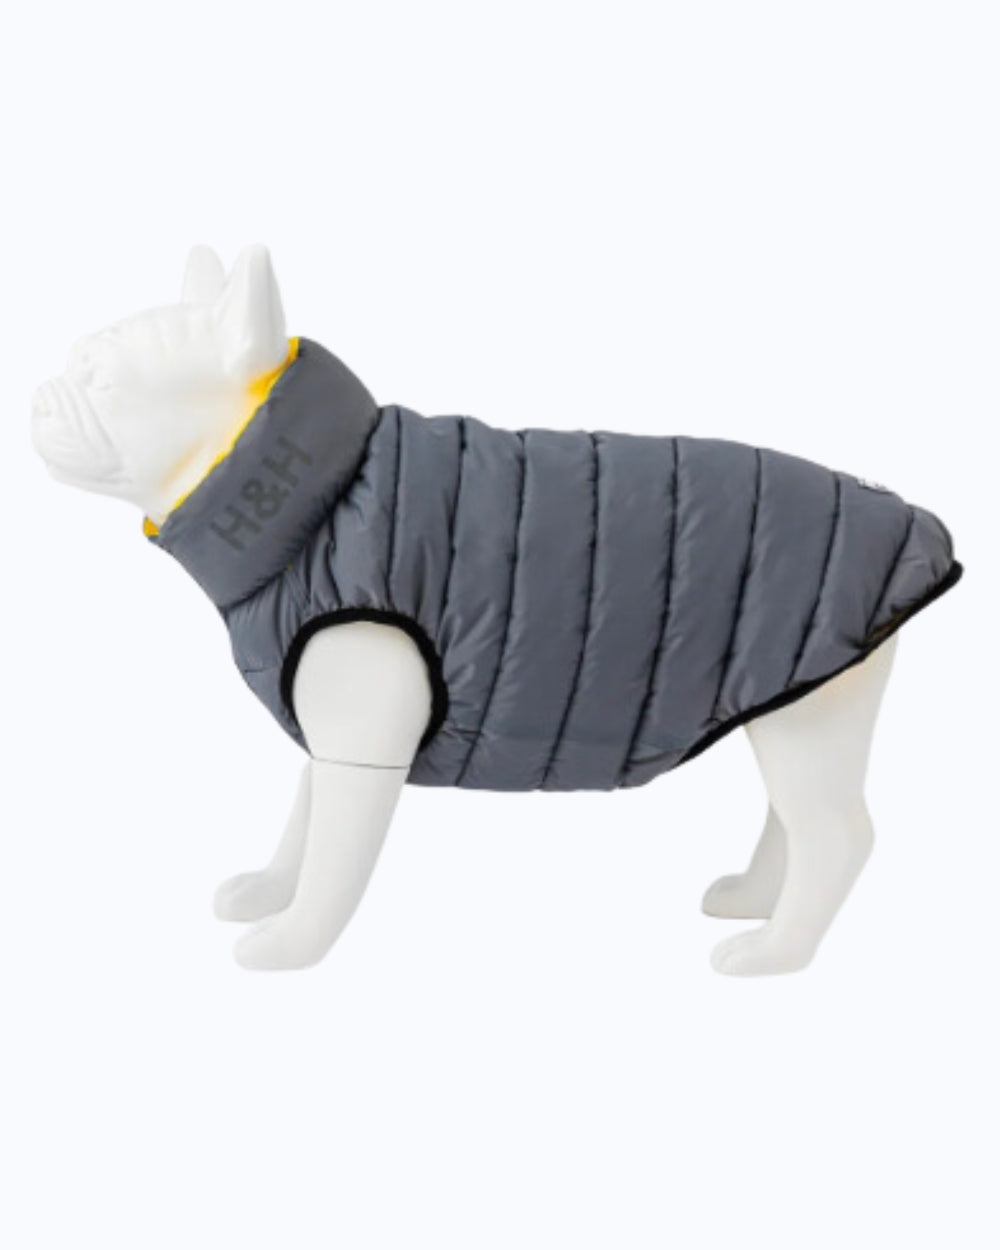 Hugo and Hudson Reversible Dog Puffer Jacket - Black and Grey - Dog Coat